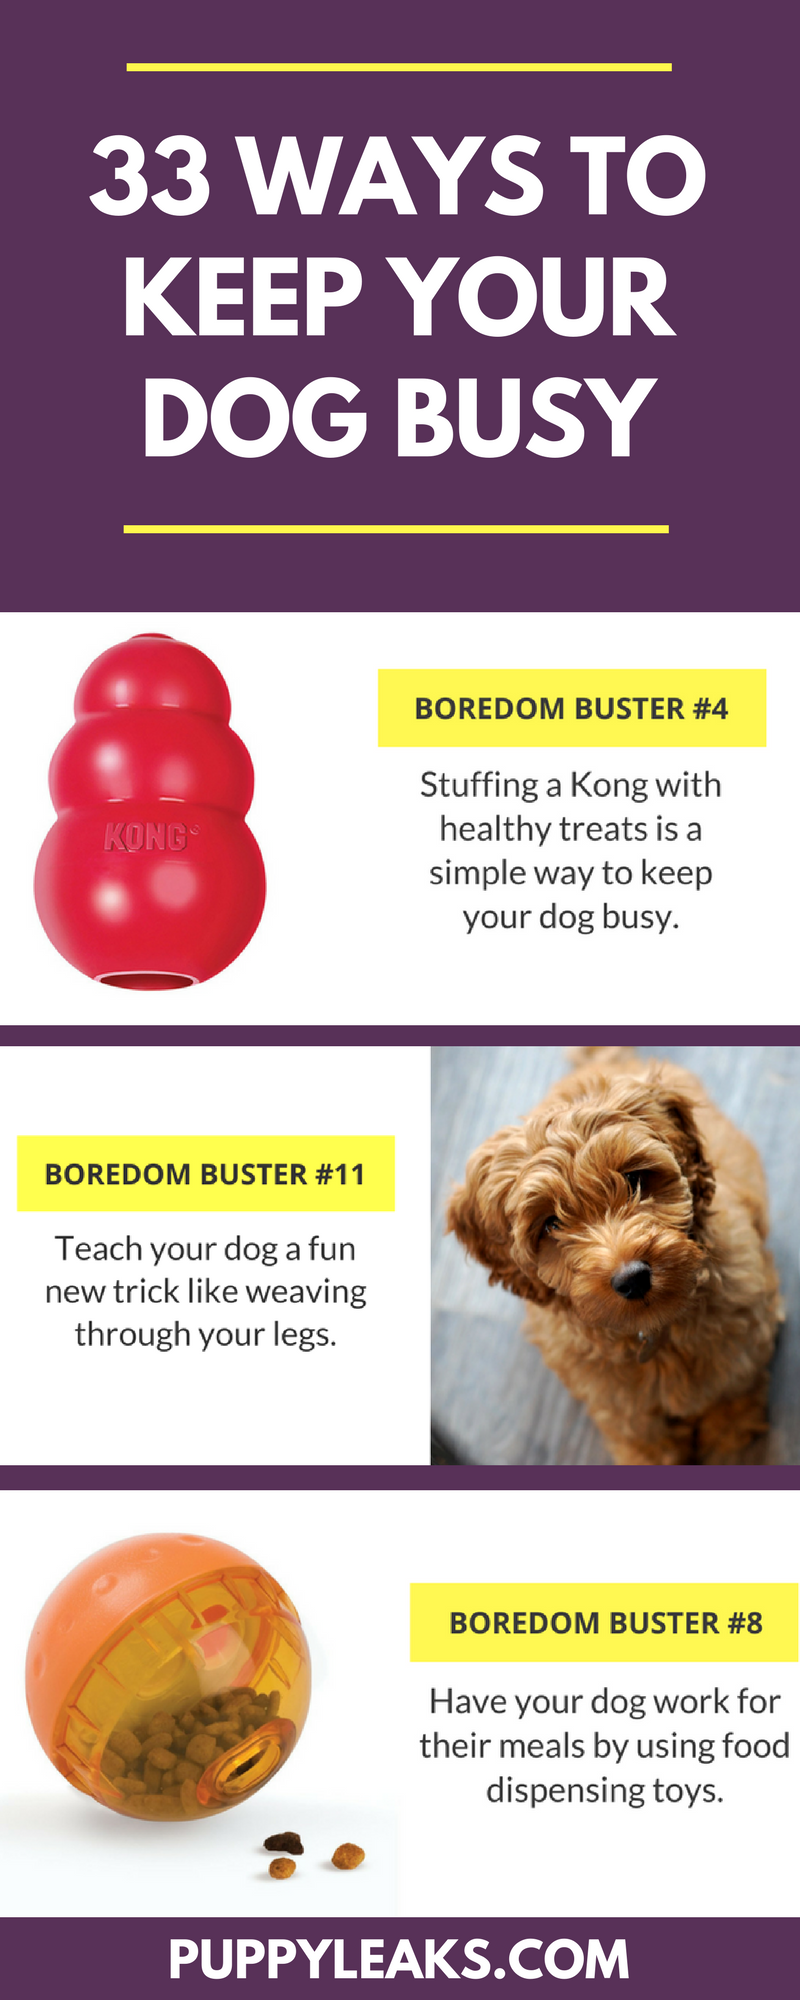 33 semplici modi per tenere occupato il tuo cane in casa